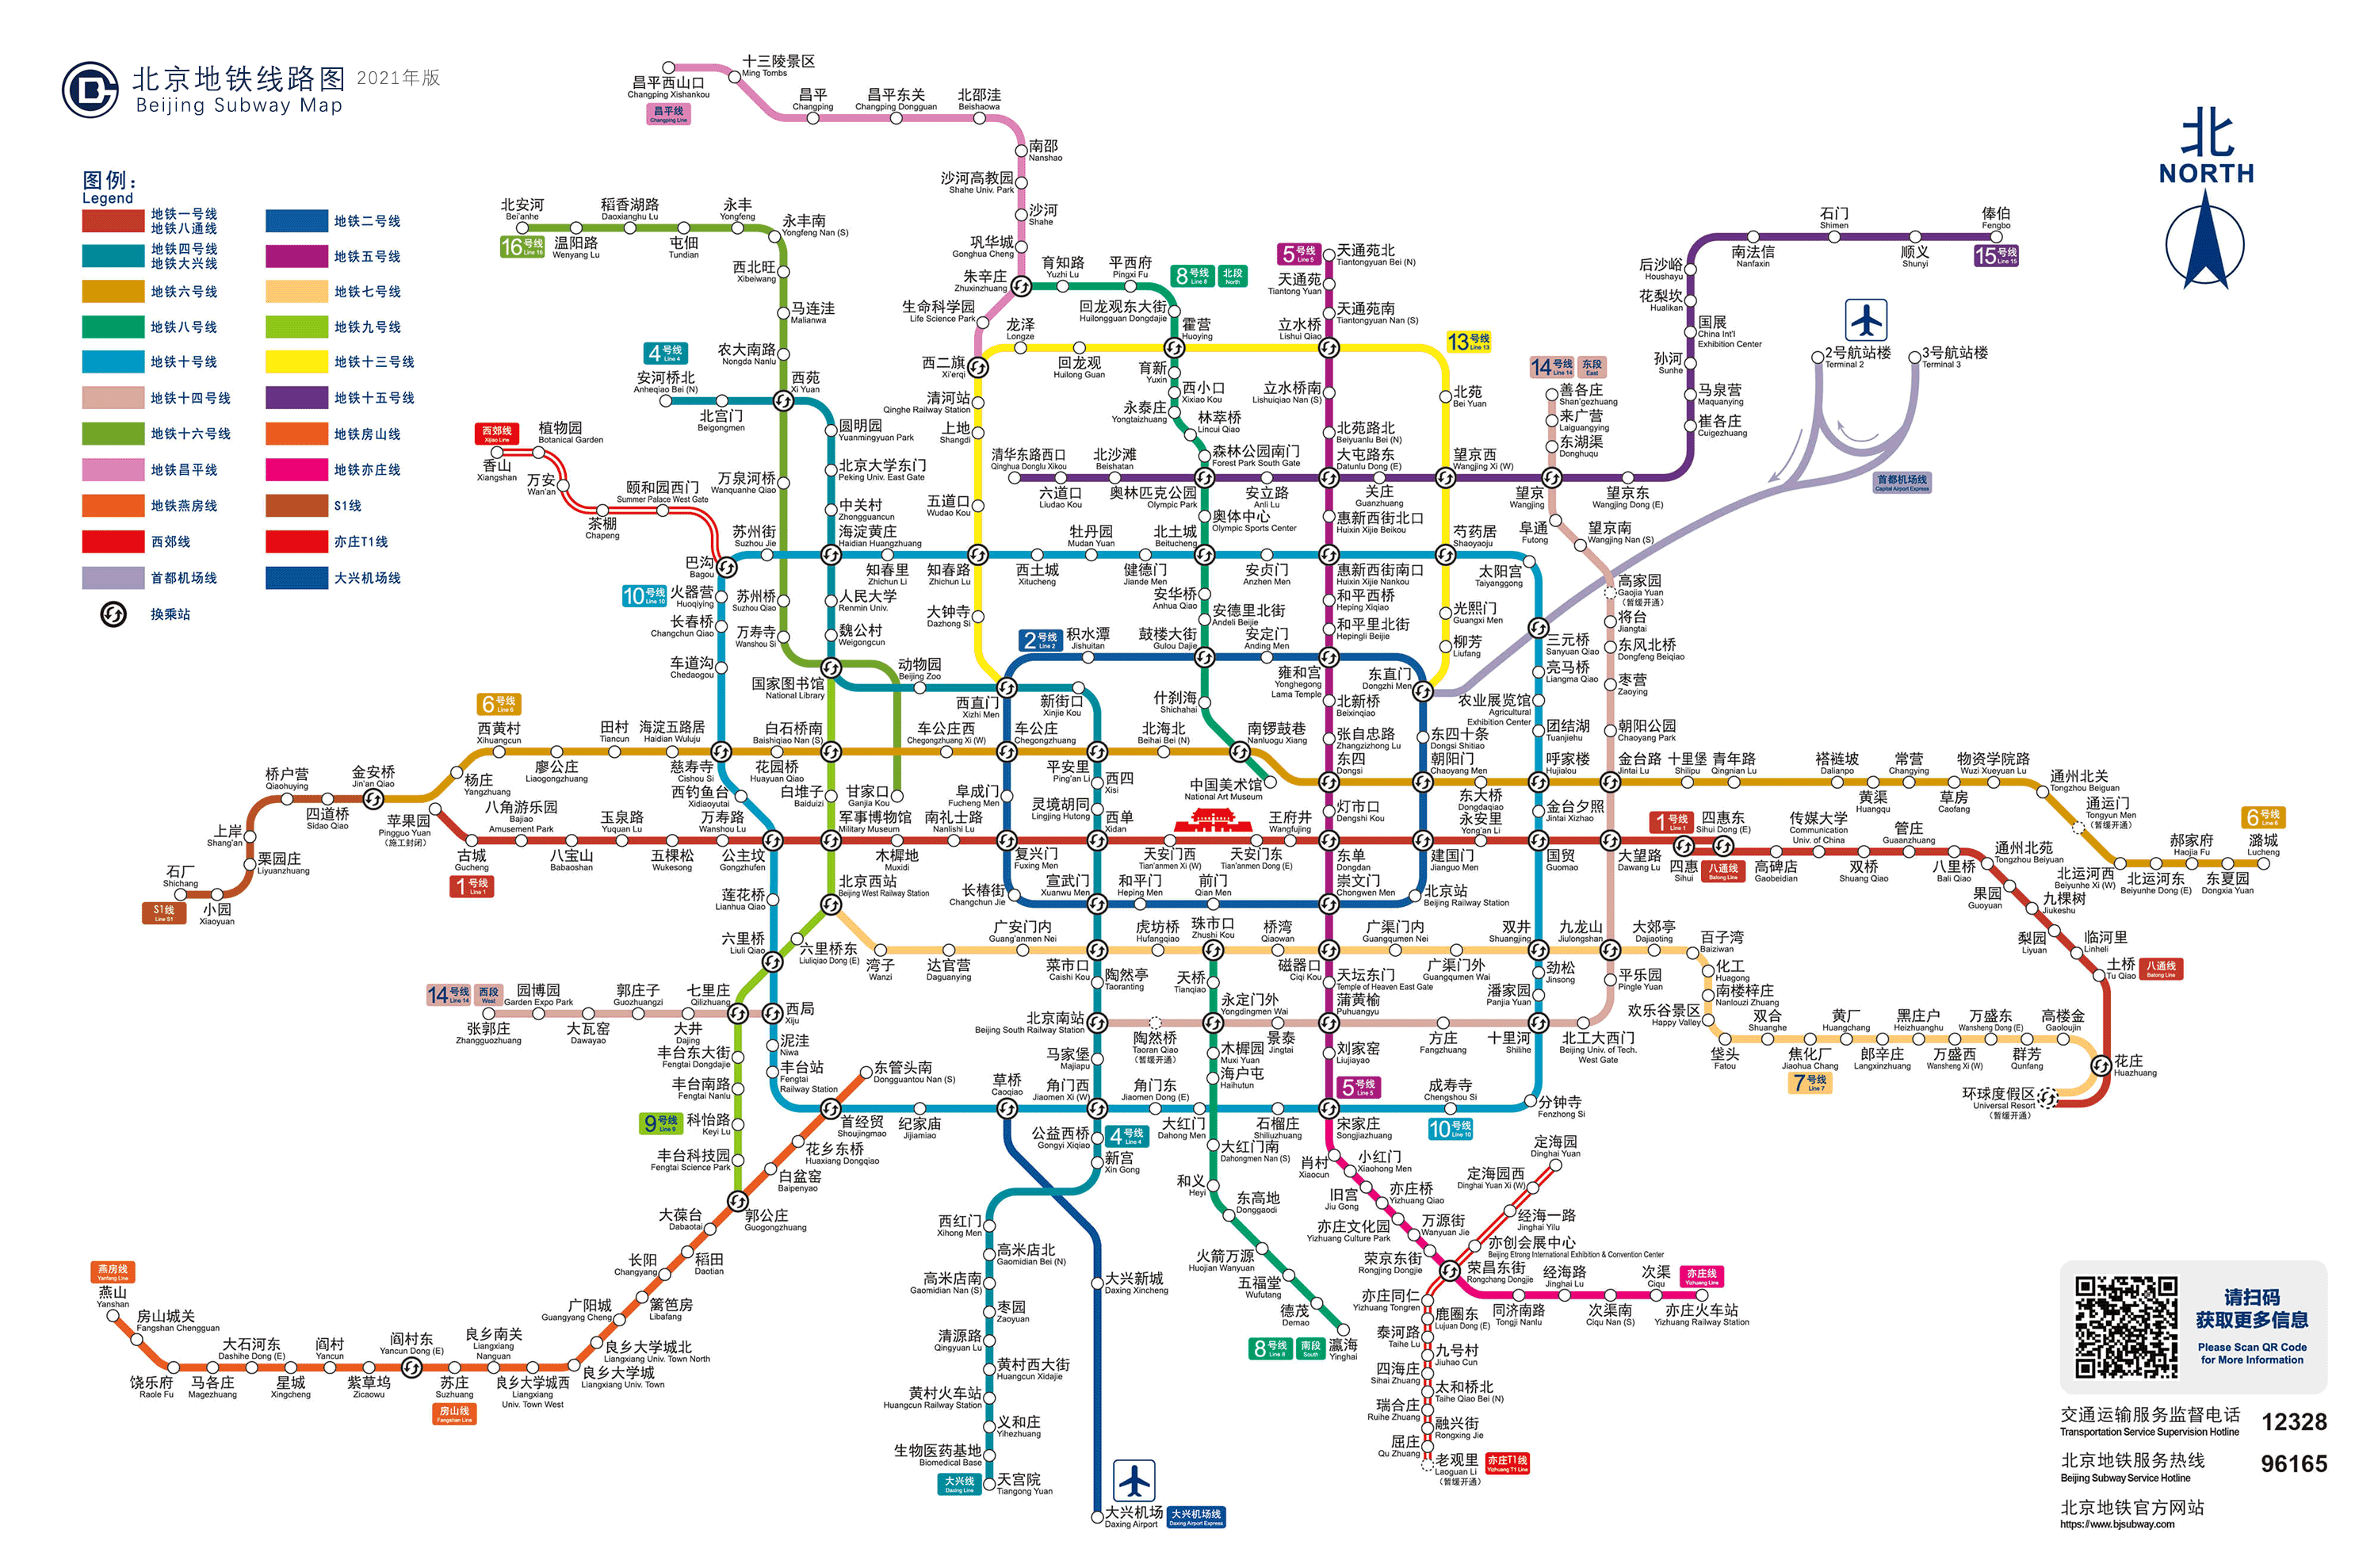 北京地铁运营线路图2021年最新版(图)_交通出行_生活